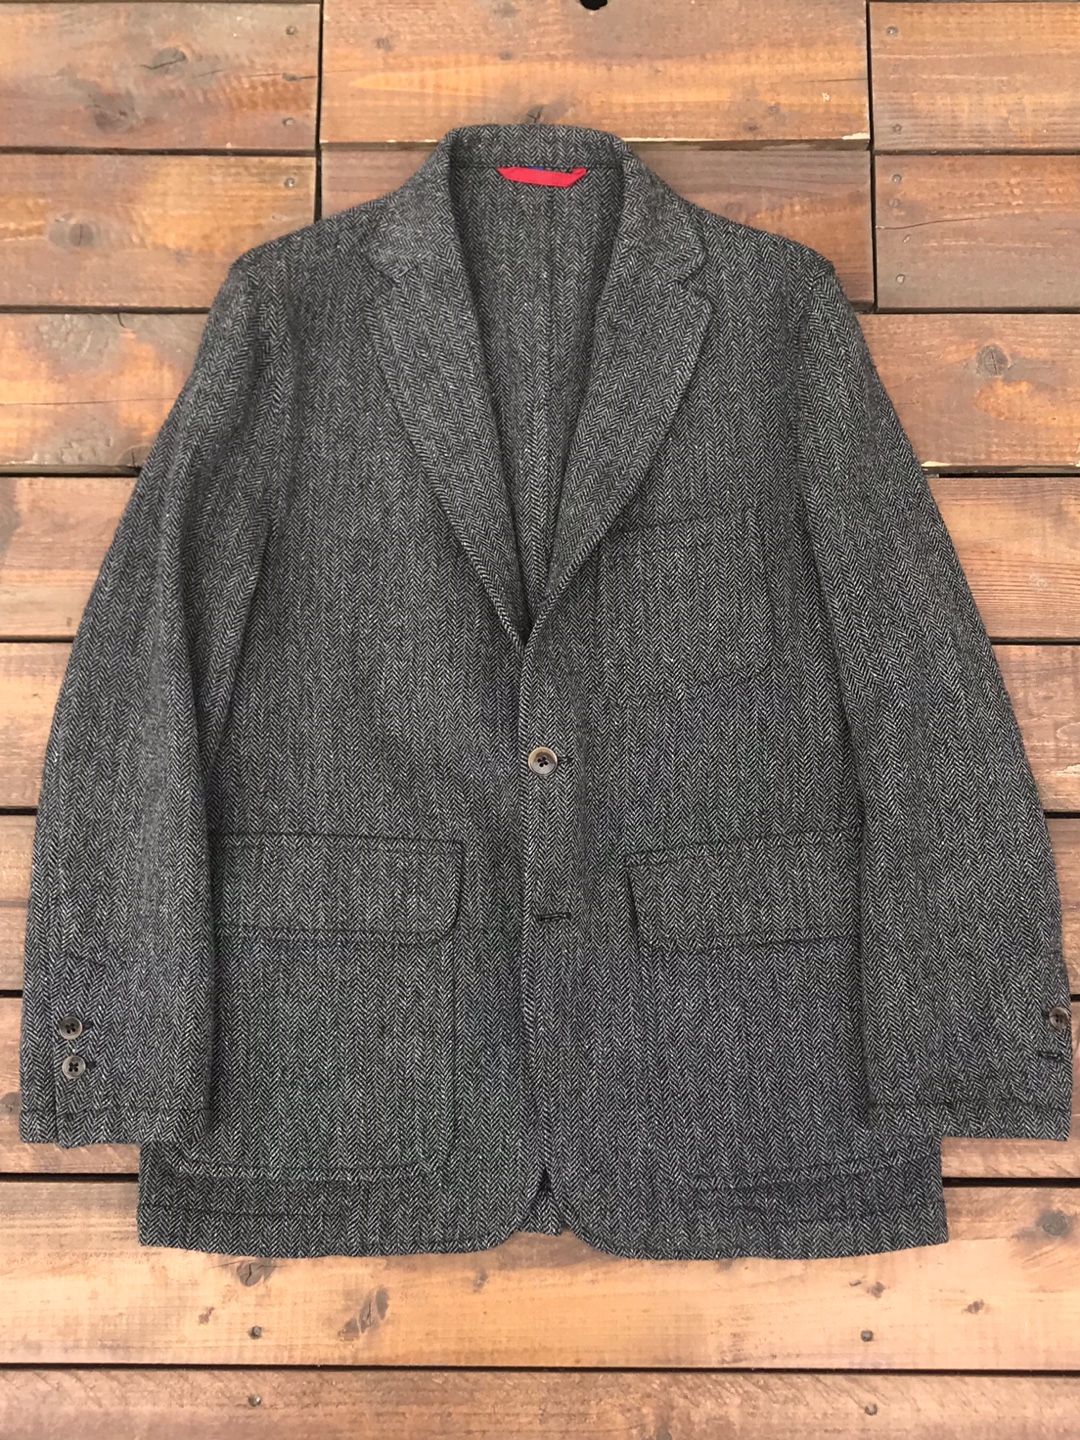 j keydge herringbone tweed unconstructed 3/2 sport jacket (48 size, ~103 추천)